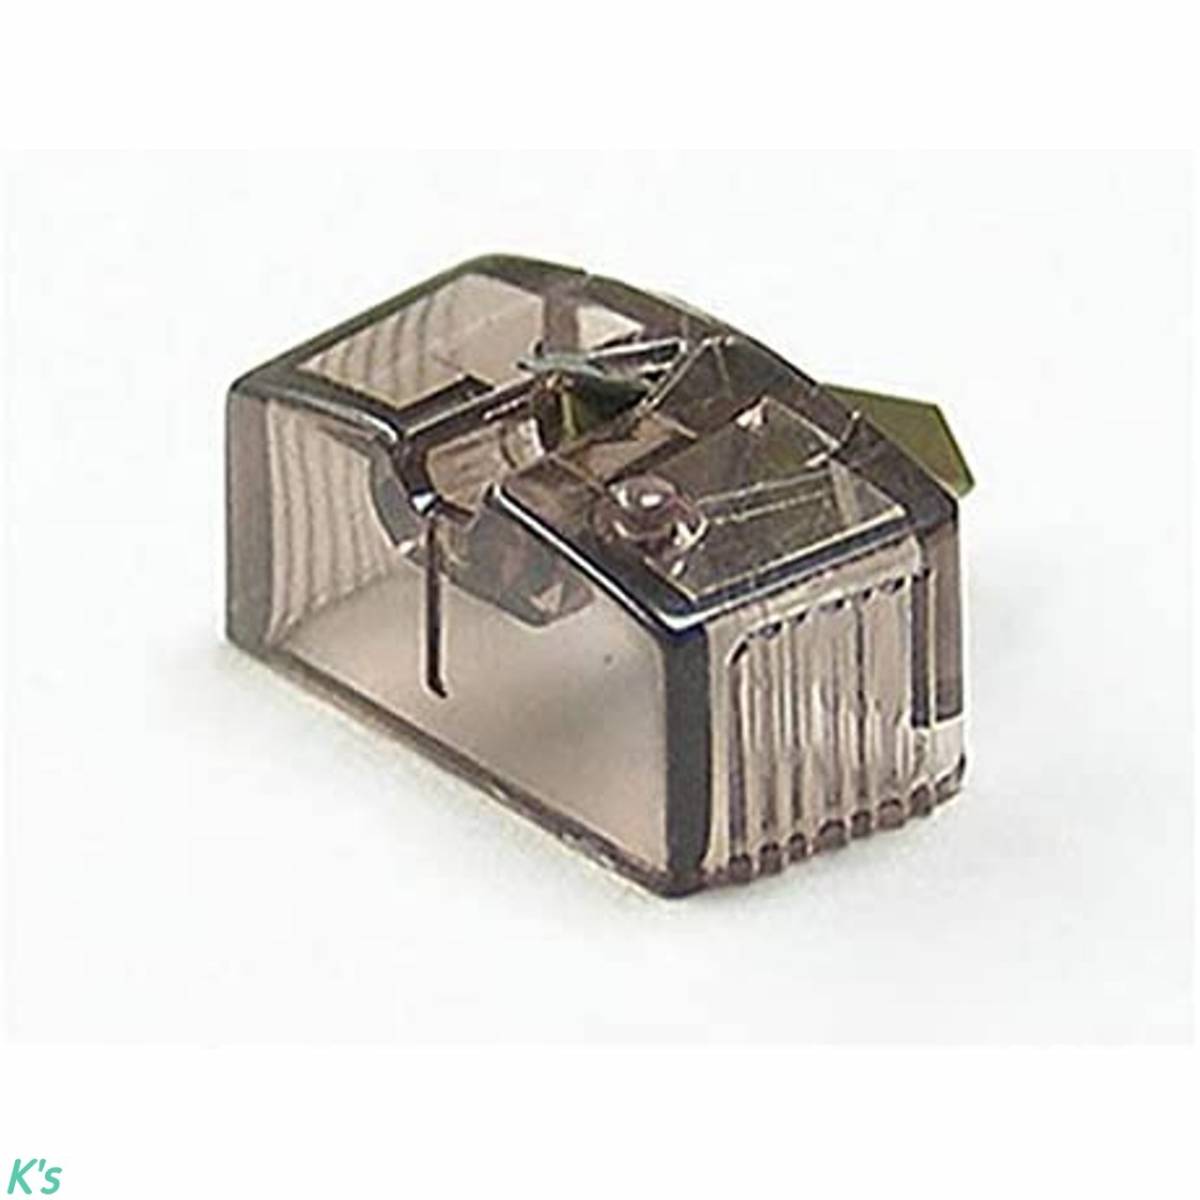 うのにもお得な JICO 交換針 ダエン針 SONY ND-35E用 カートタイプ MM 針圧 1.5 対応カートリッジ XL-35 日本精機宝石工業株式会社 レコード針 MM